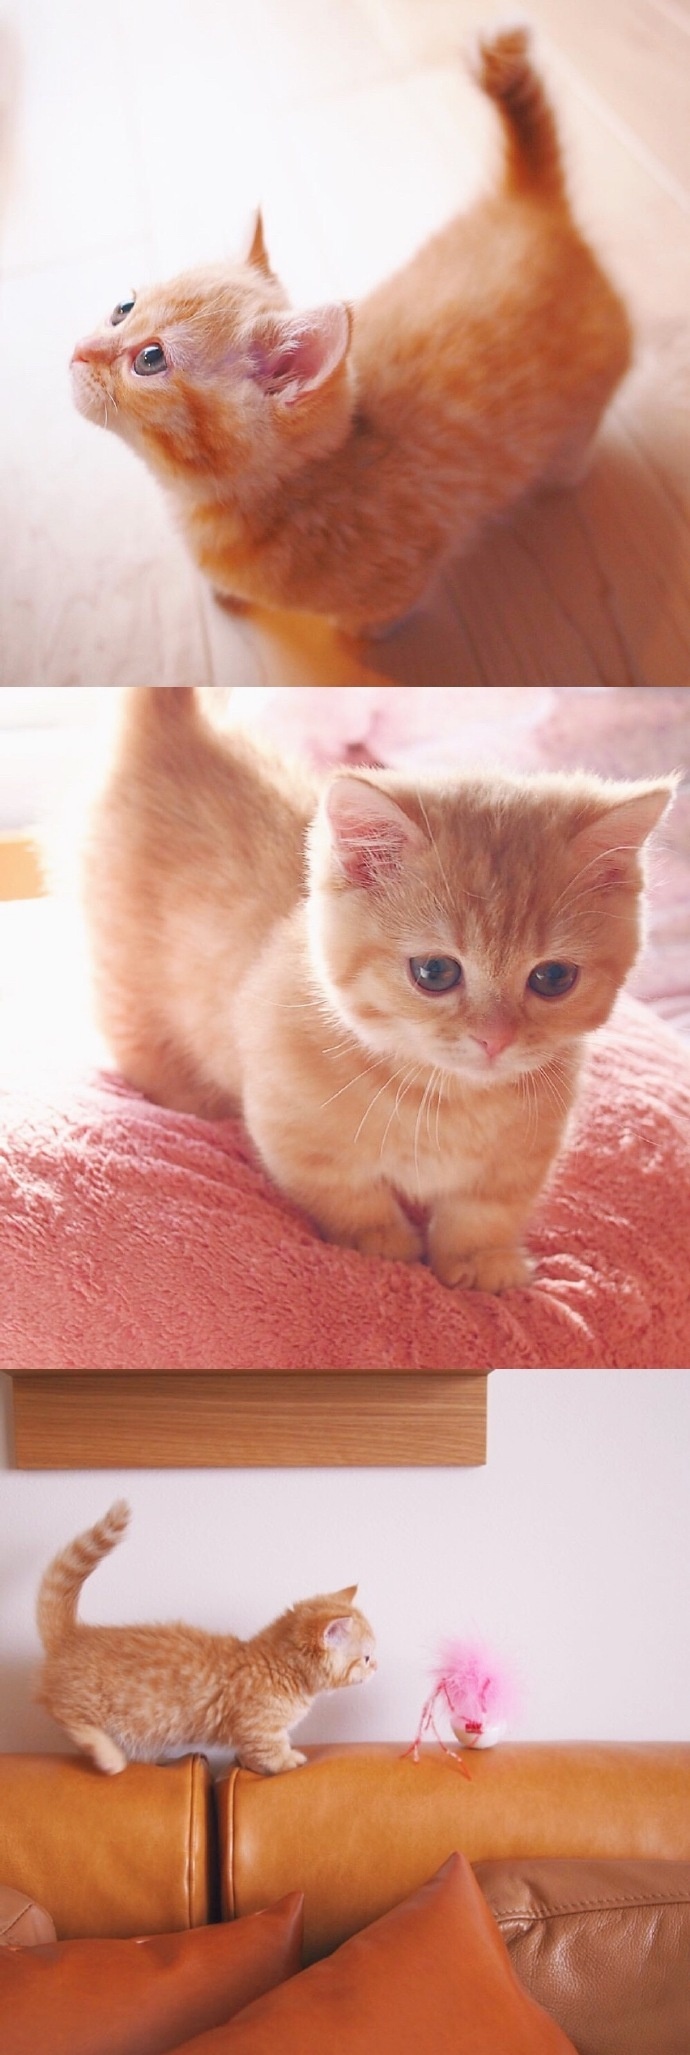 猫的图片可爱 很萌的橘猫图片